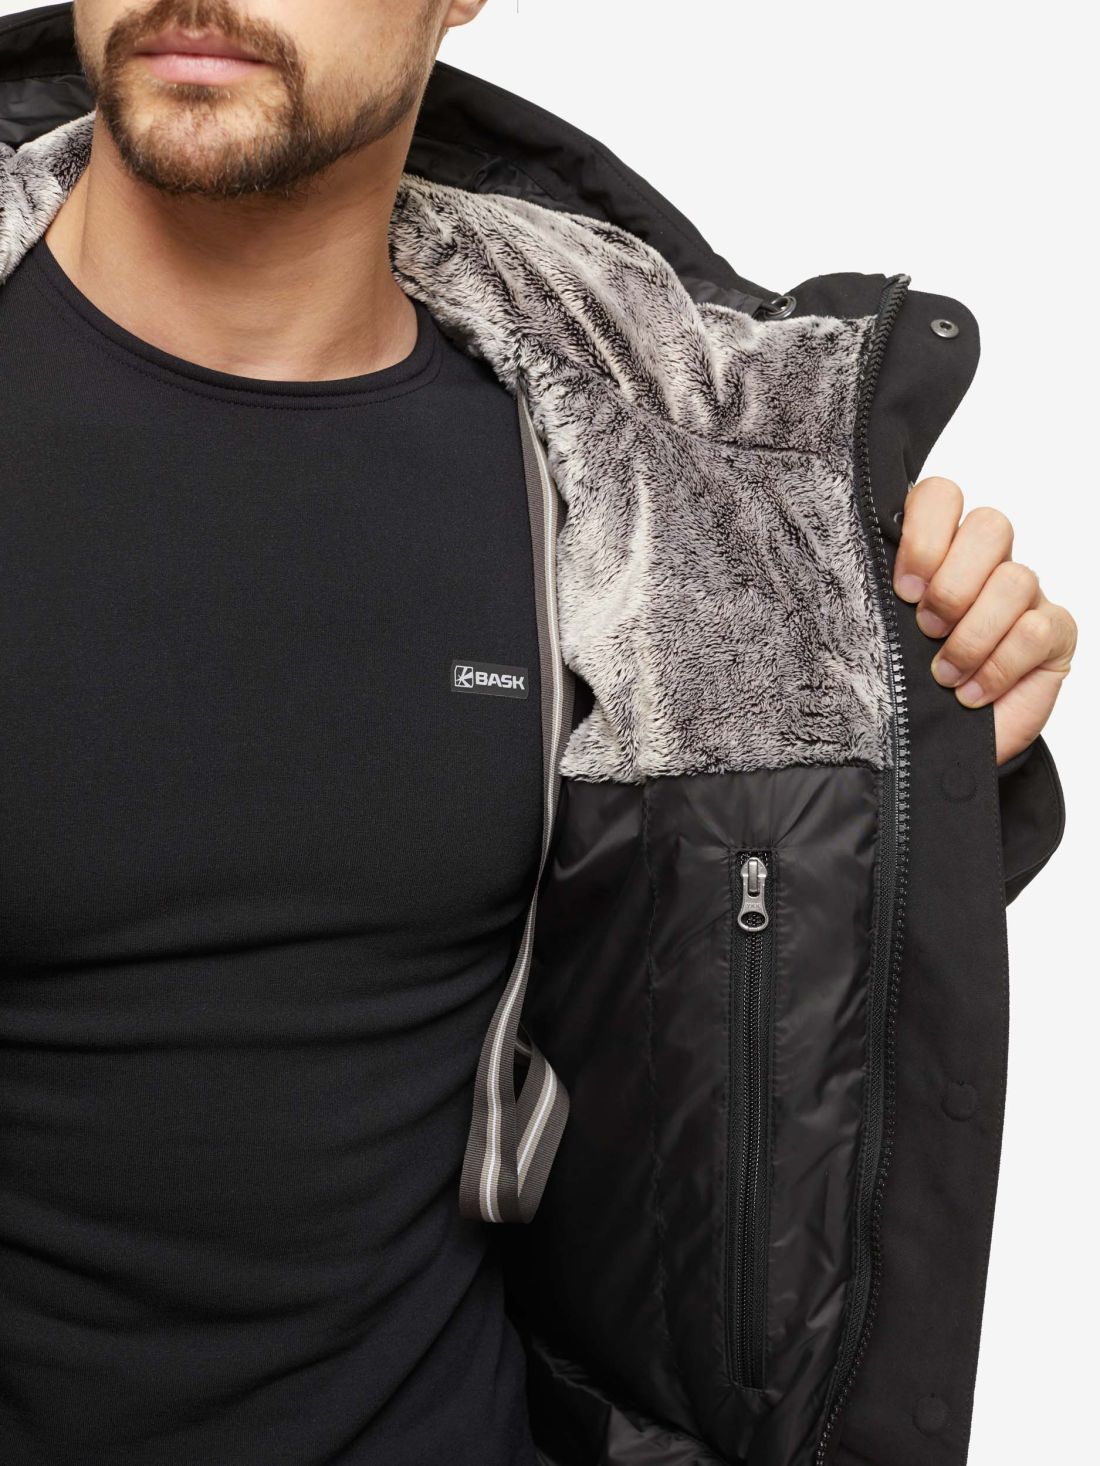 Пуховая мужская куртка-аляска Bask Taimyr V2